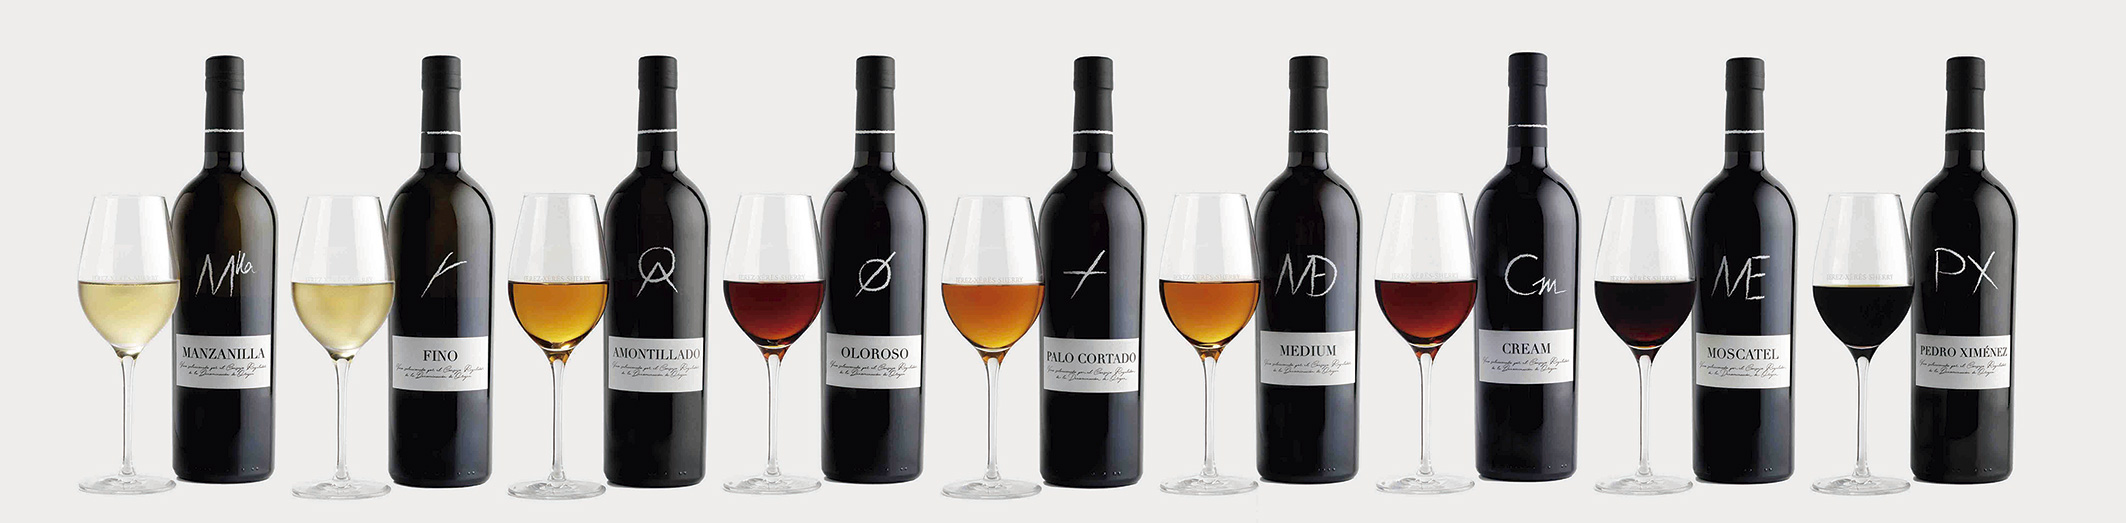 Variedad de Vinos de Jerez